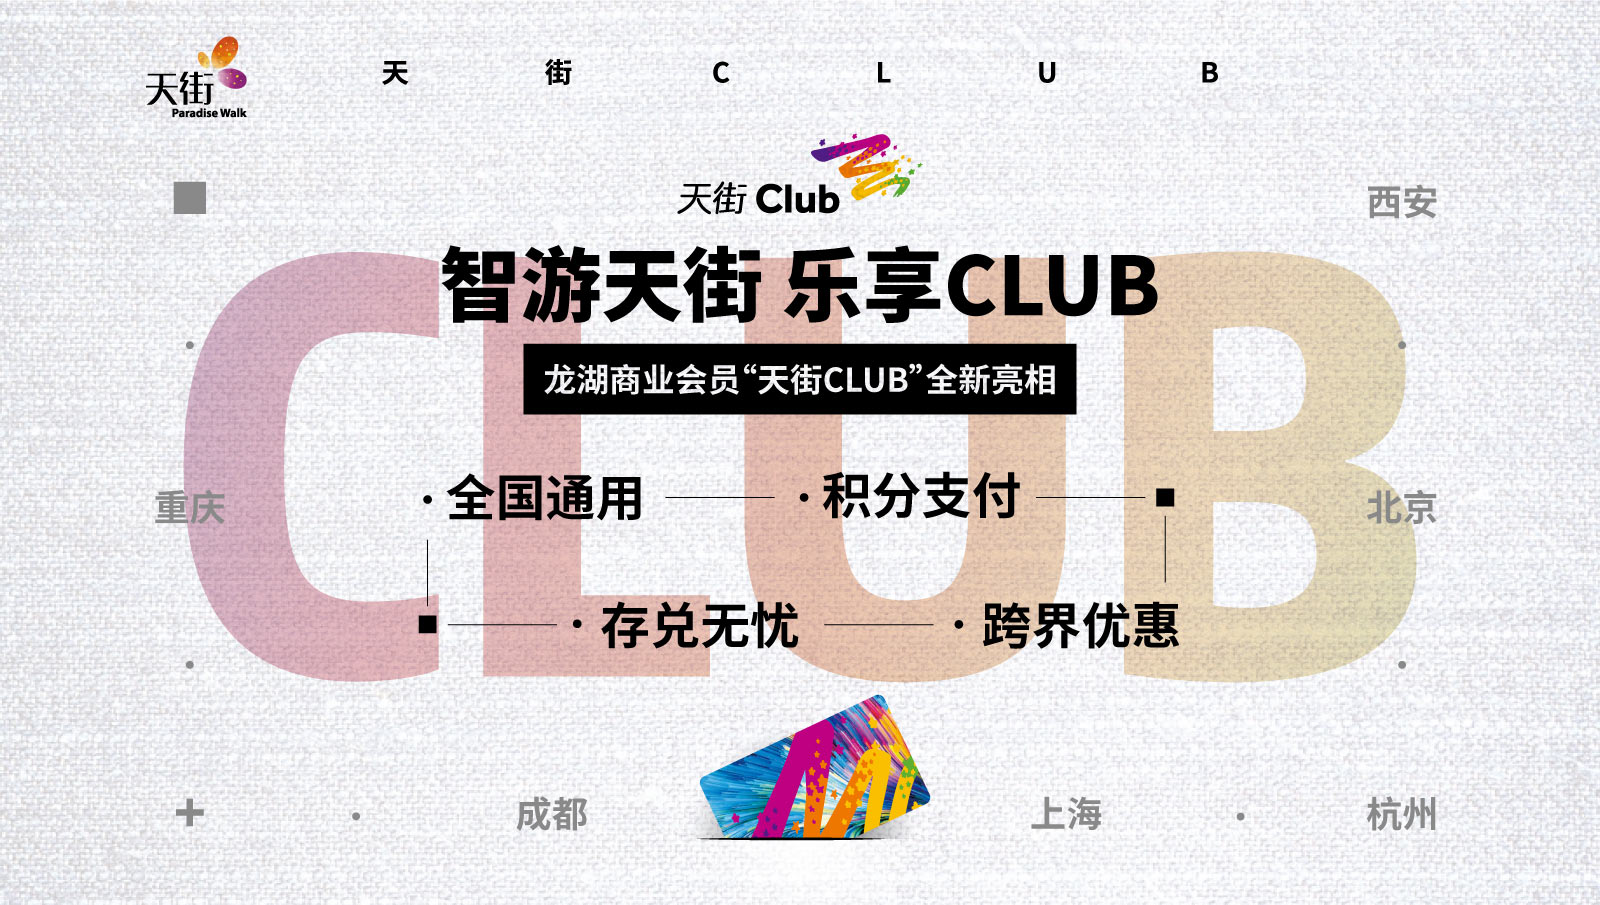 龙湖商业会员平台三重升级 天街CLUB全新亮相